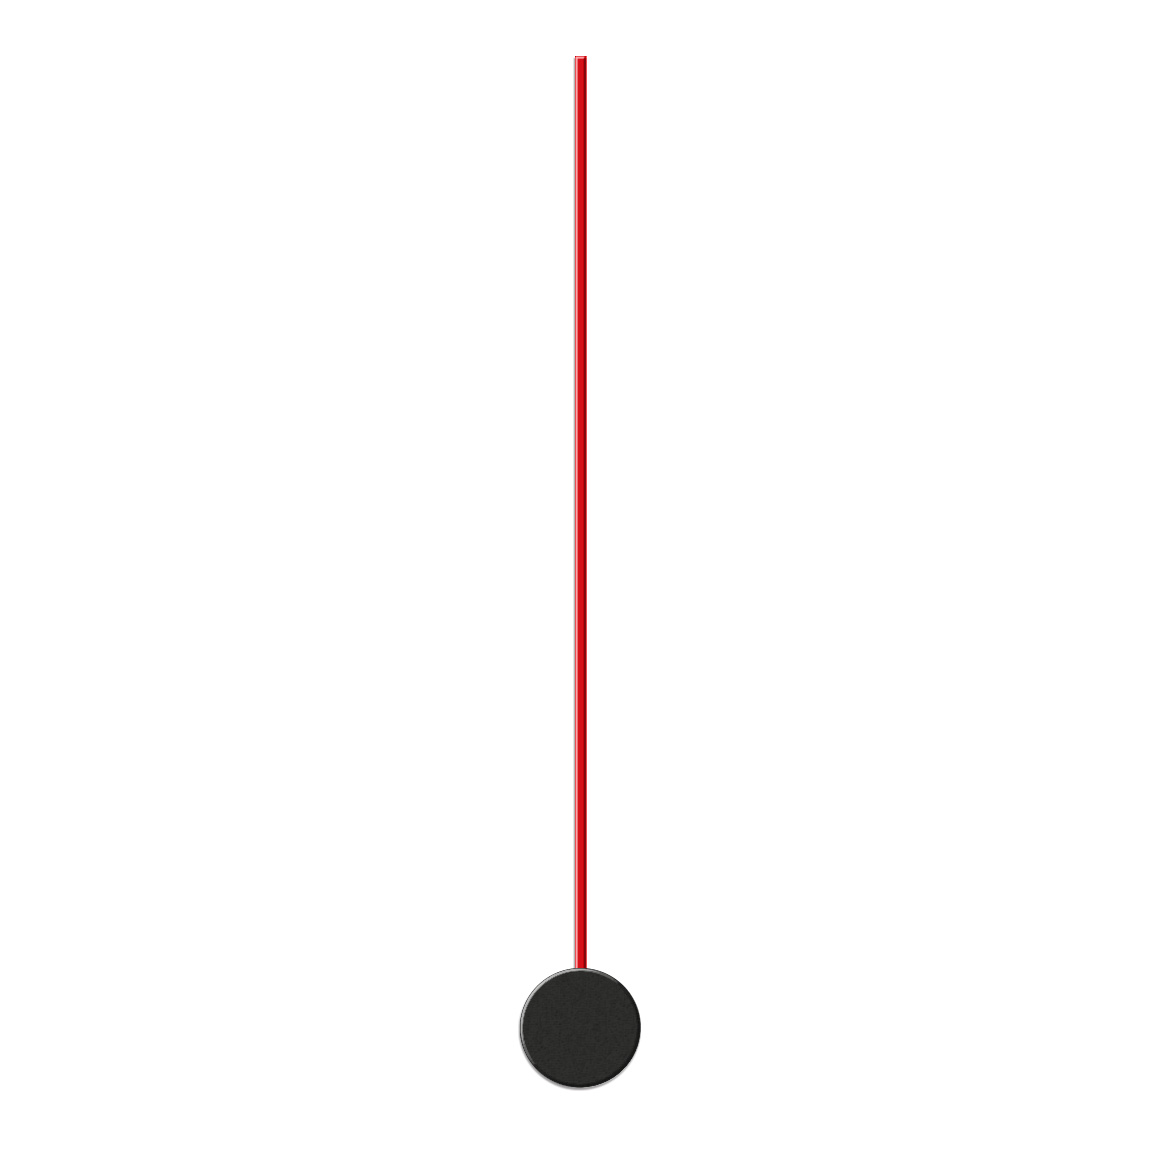 Sekundenzeiger, L 80 mm, Alu rot für Standard Quarzwerke